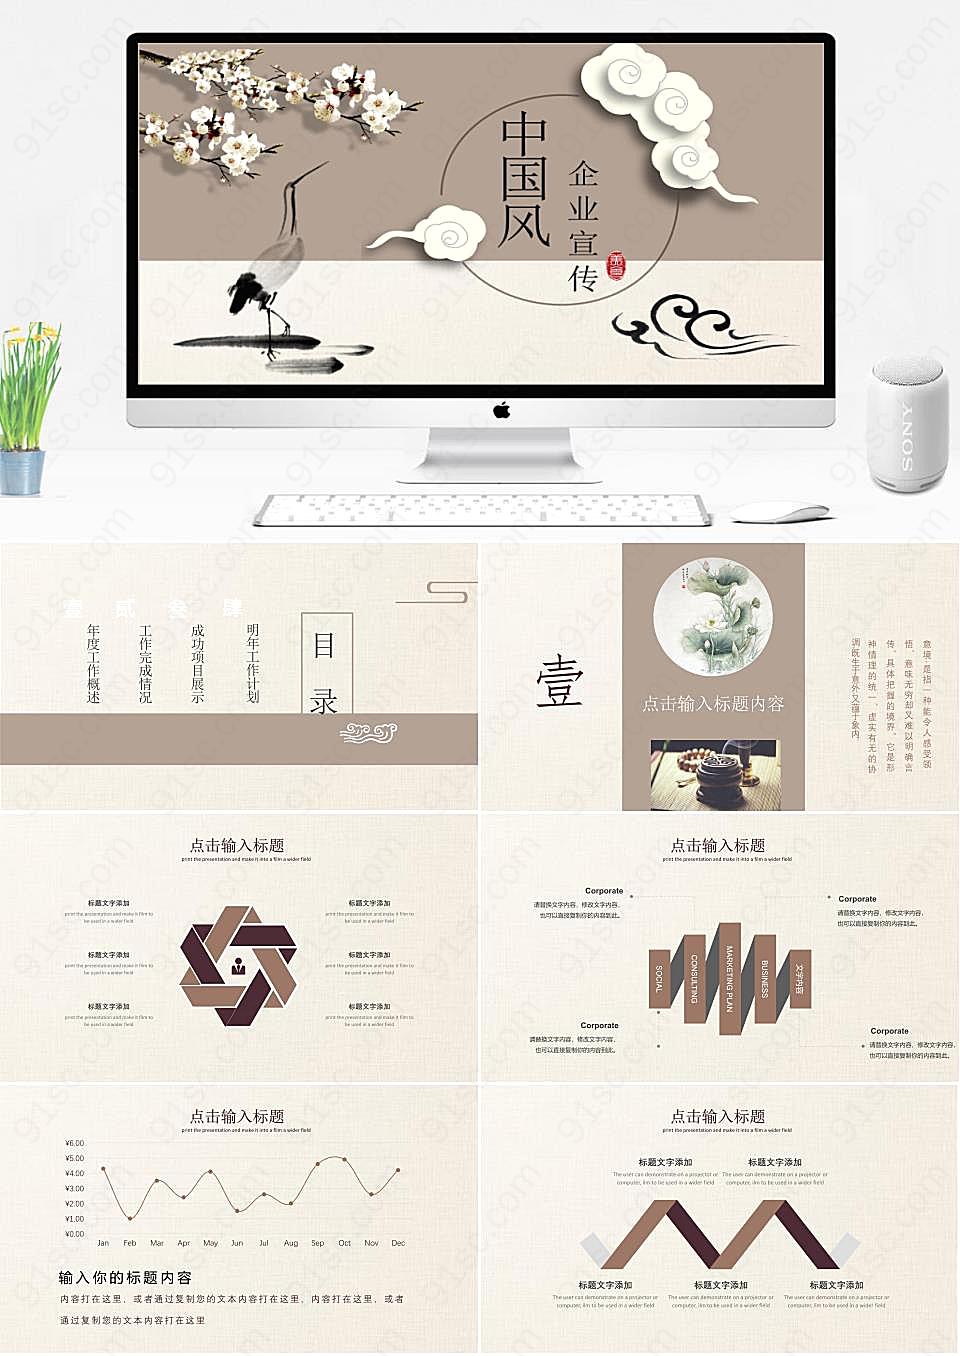 中国传统美学仙鹤主题企业形象展示PPT模板企业宣传下载